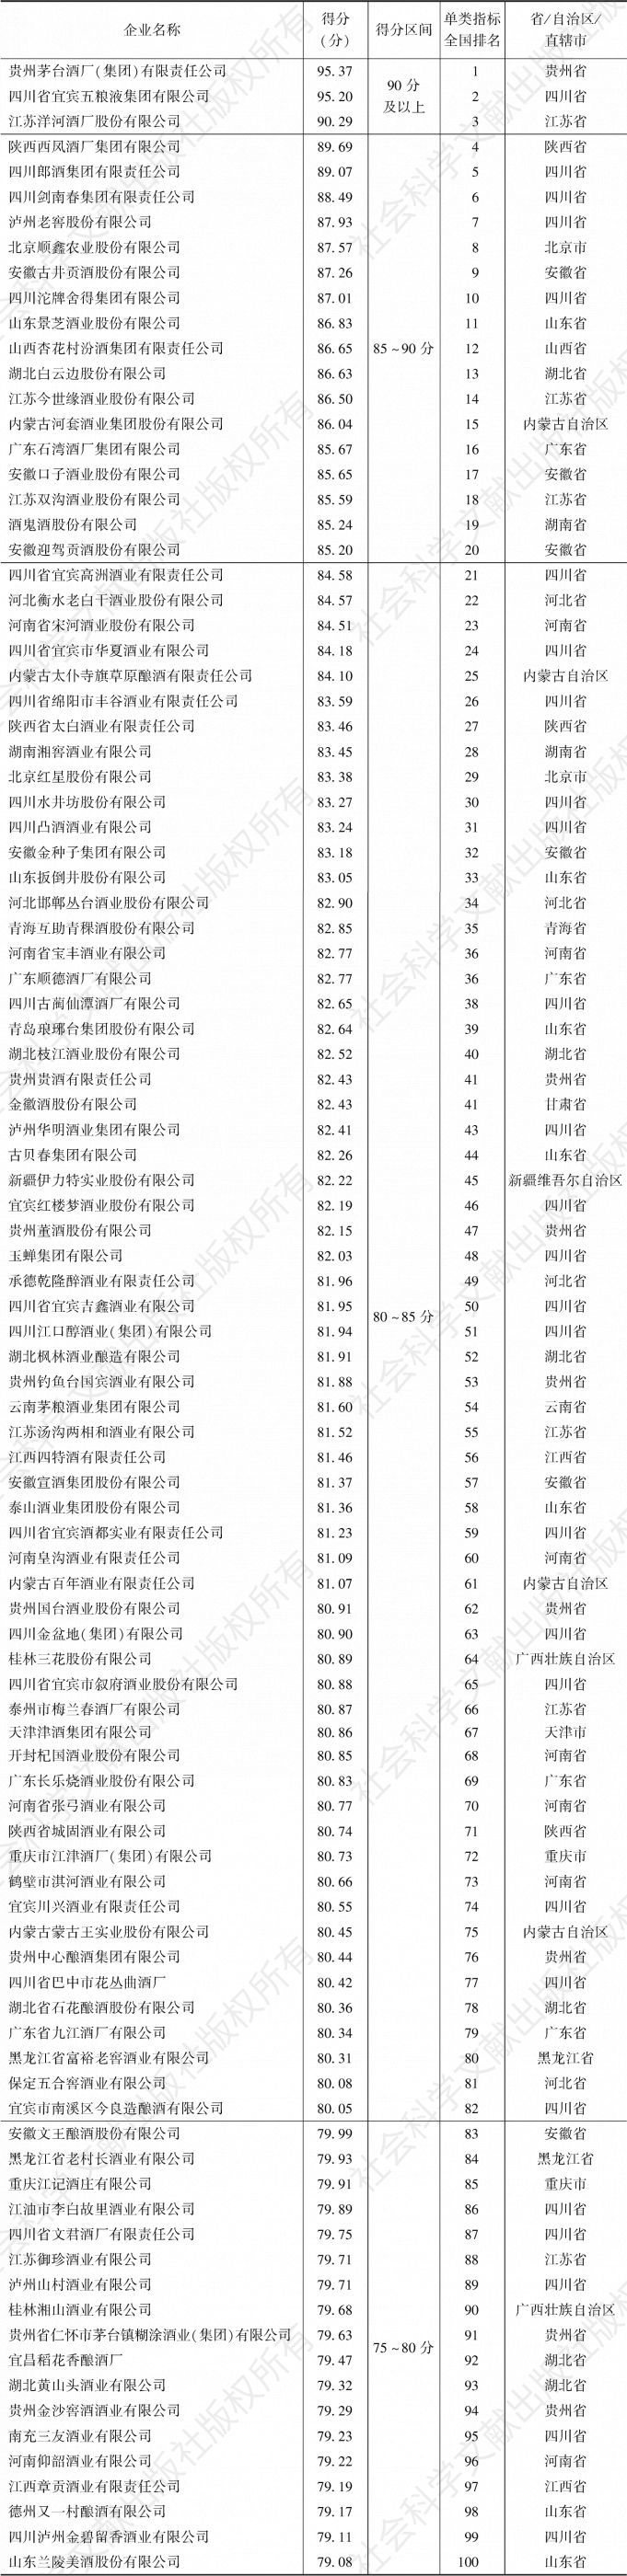 表1-14 中国白酒企业品牌现实价值指标100强企业